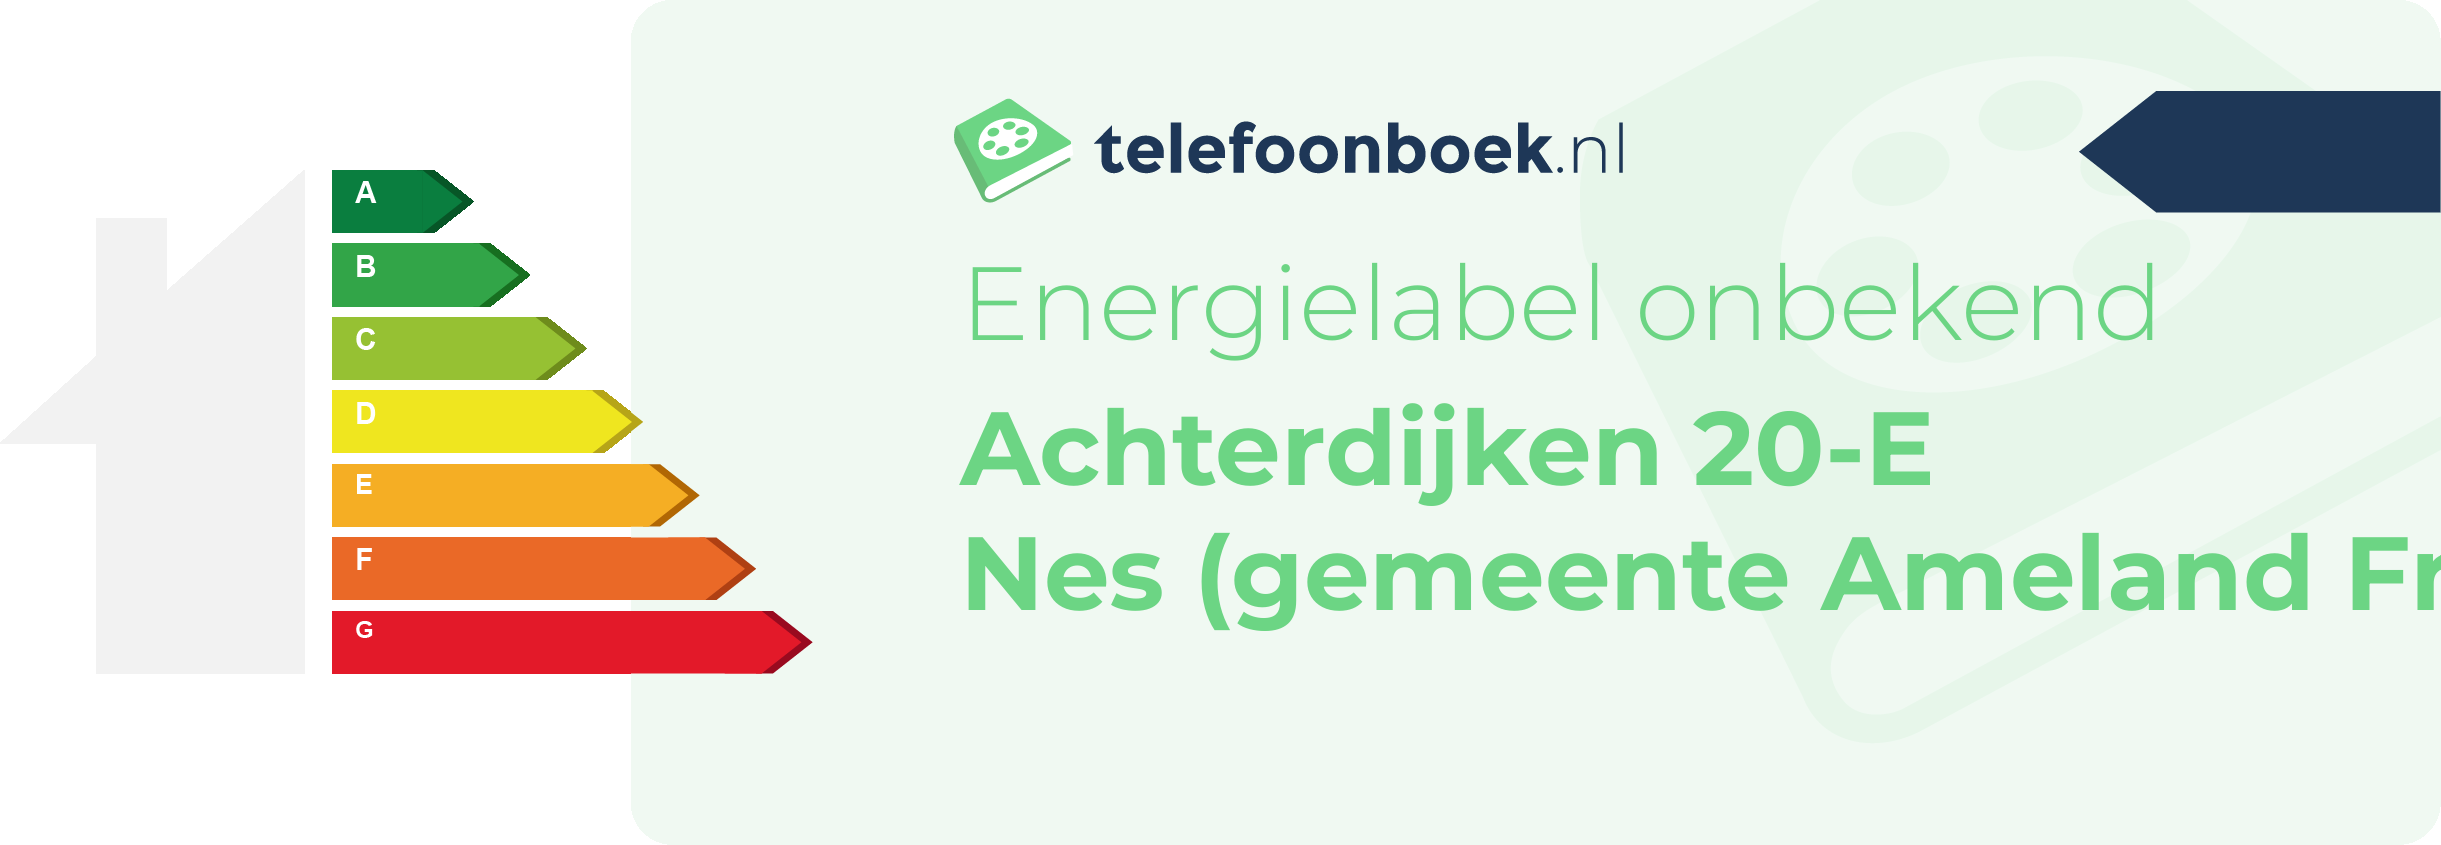 Energielabel Achterdijken 20-E Nes (gemeente Ameland Friesland)